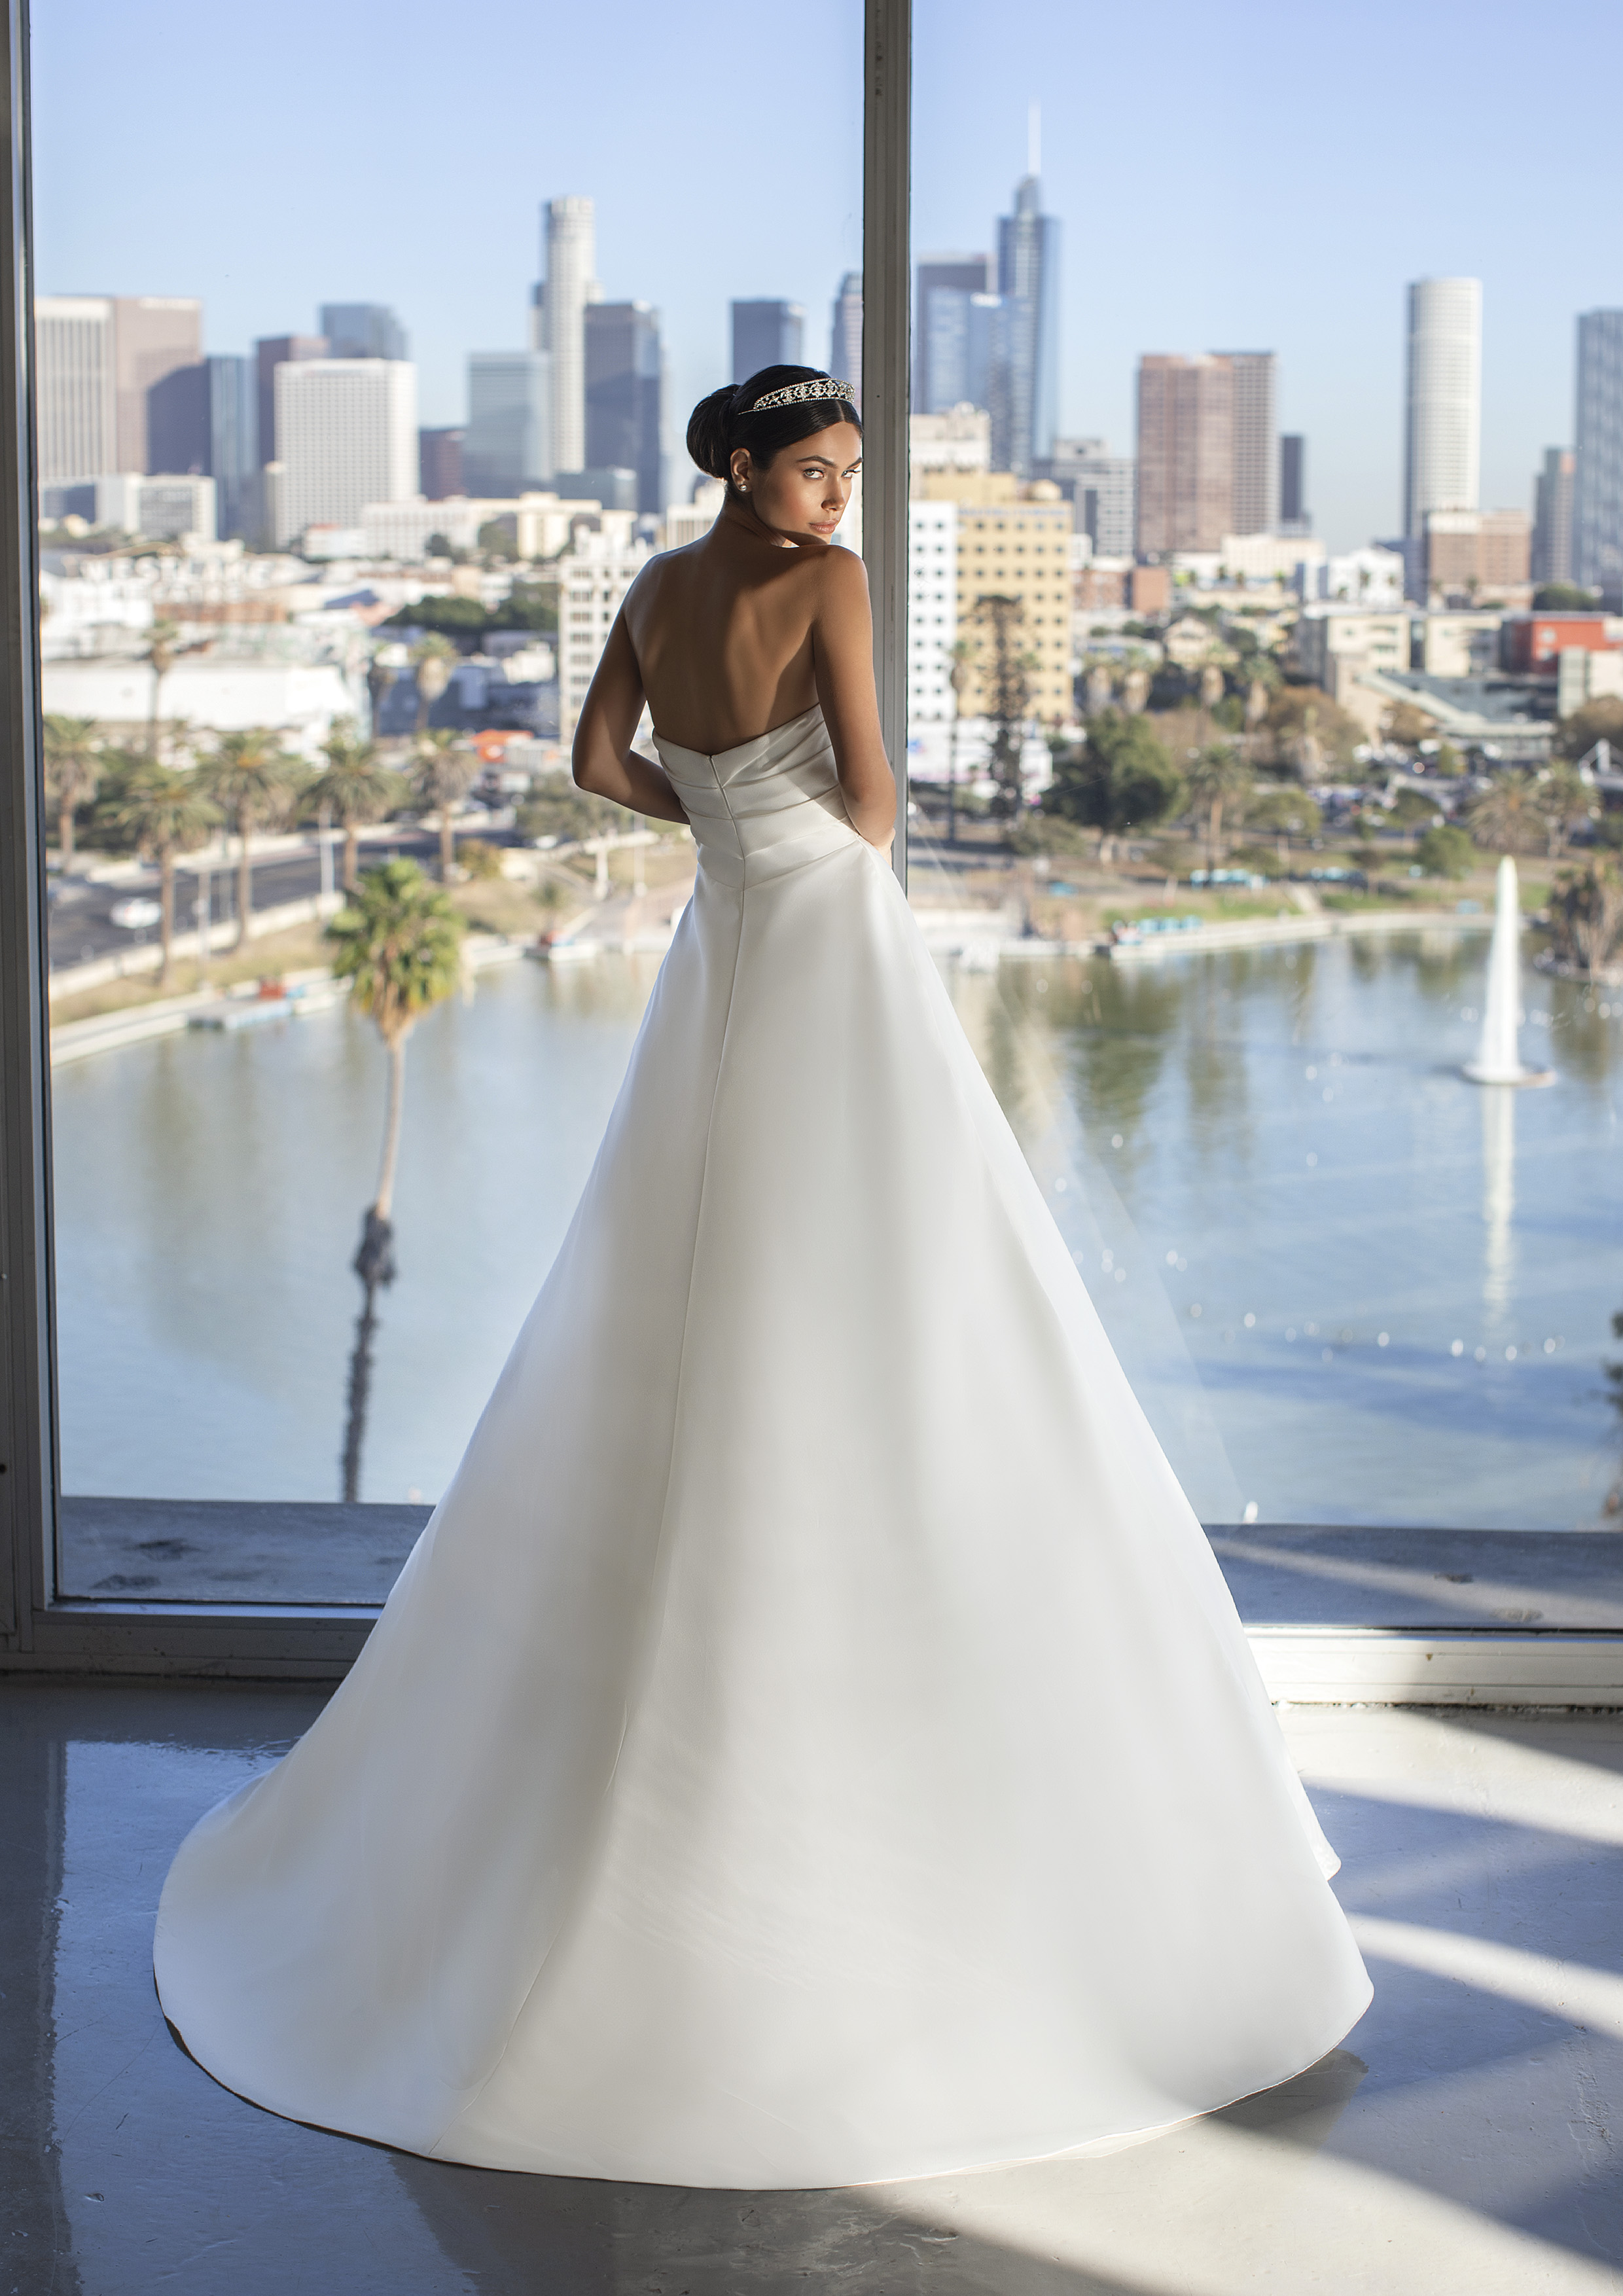 Vestido de noiva modelo Jurado da coleção Pronovias 2021 Cruise Collection